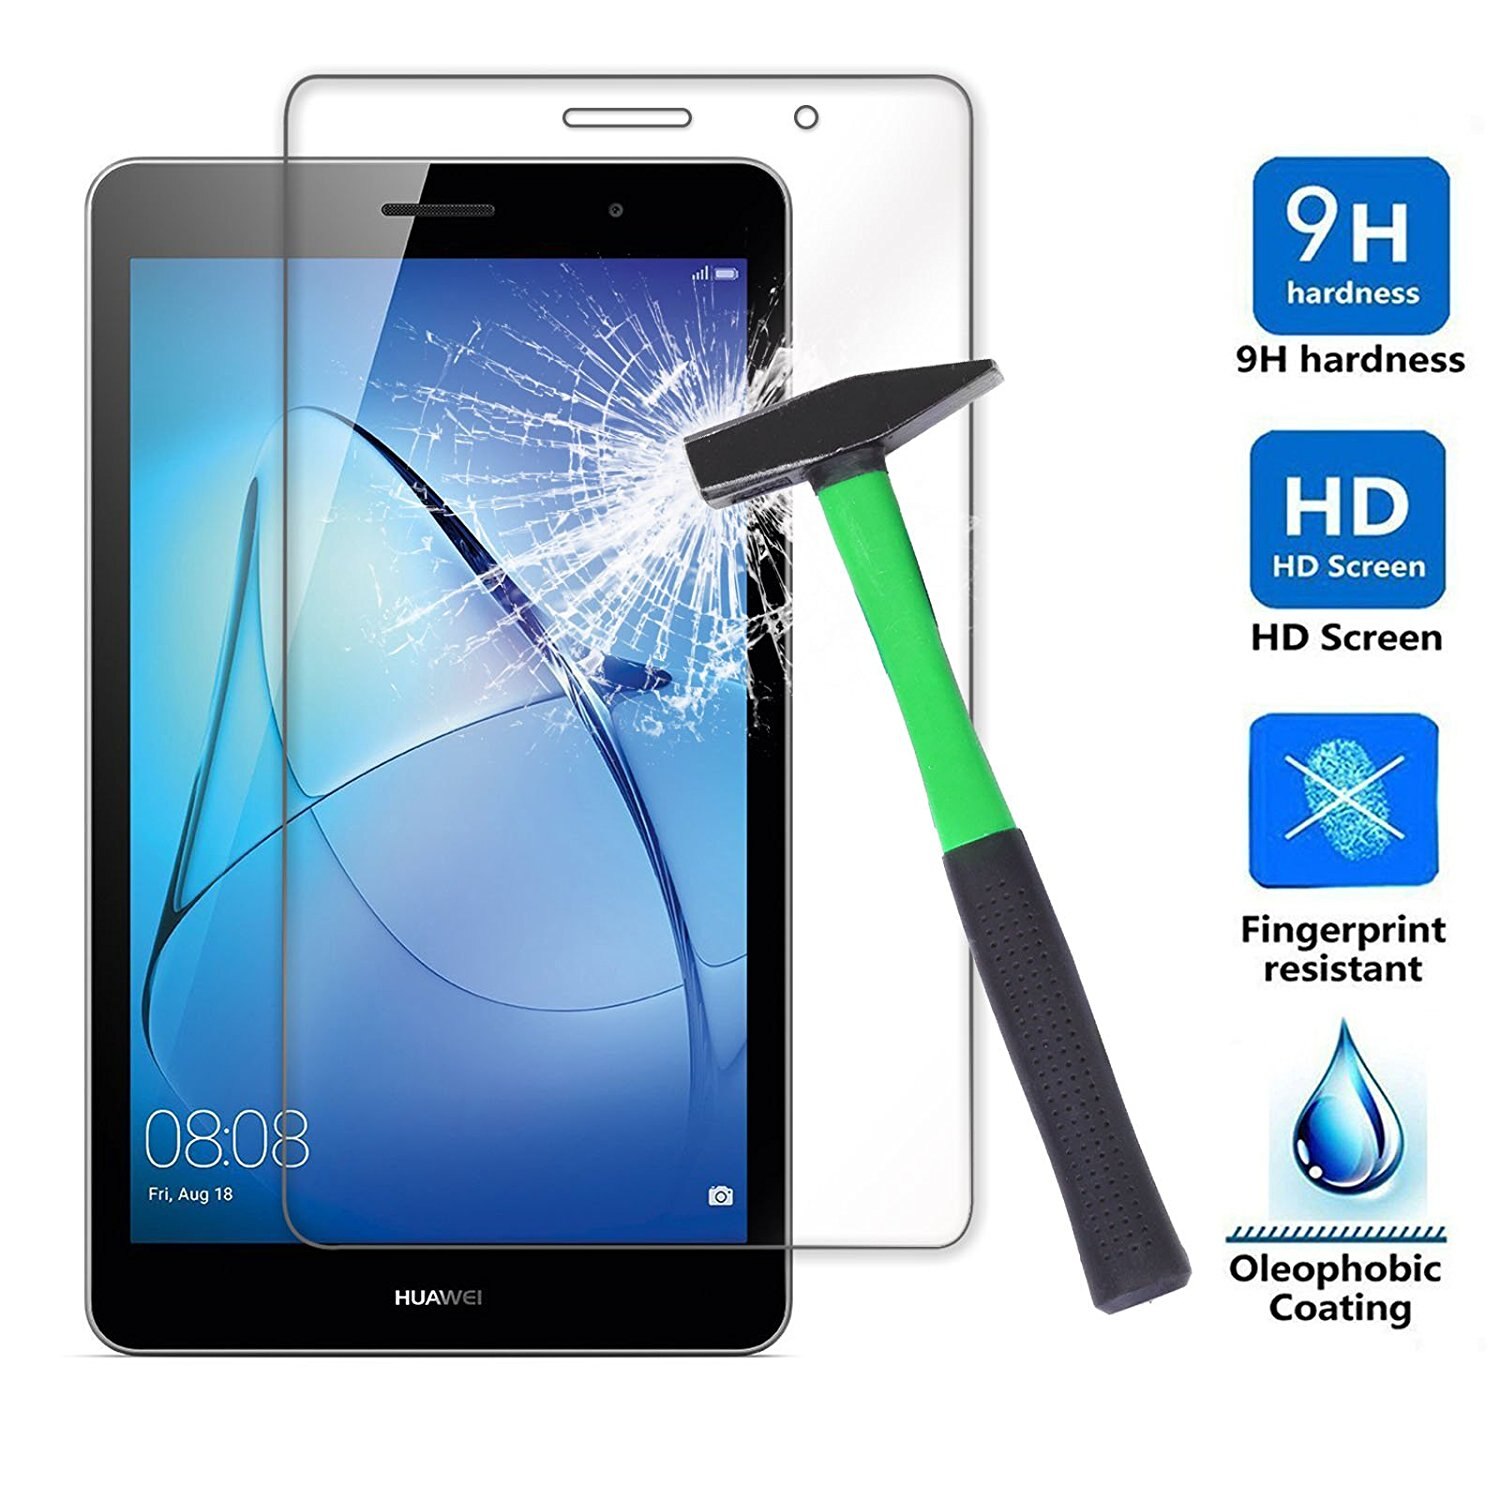 Voor Huawei Mediapad T3 8 inch Gehard Glas, clear 9 H explosieveilige LCD Screen Protector voor KOB-L09 KOB-W09 Beschermende Film